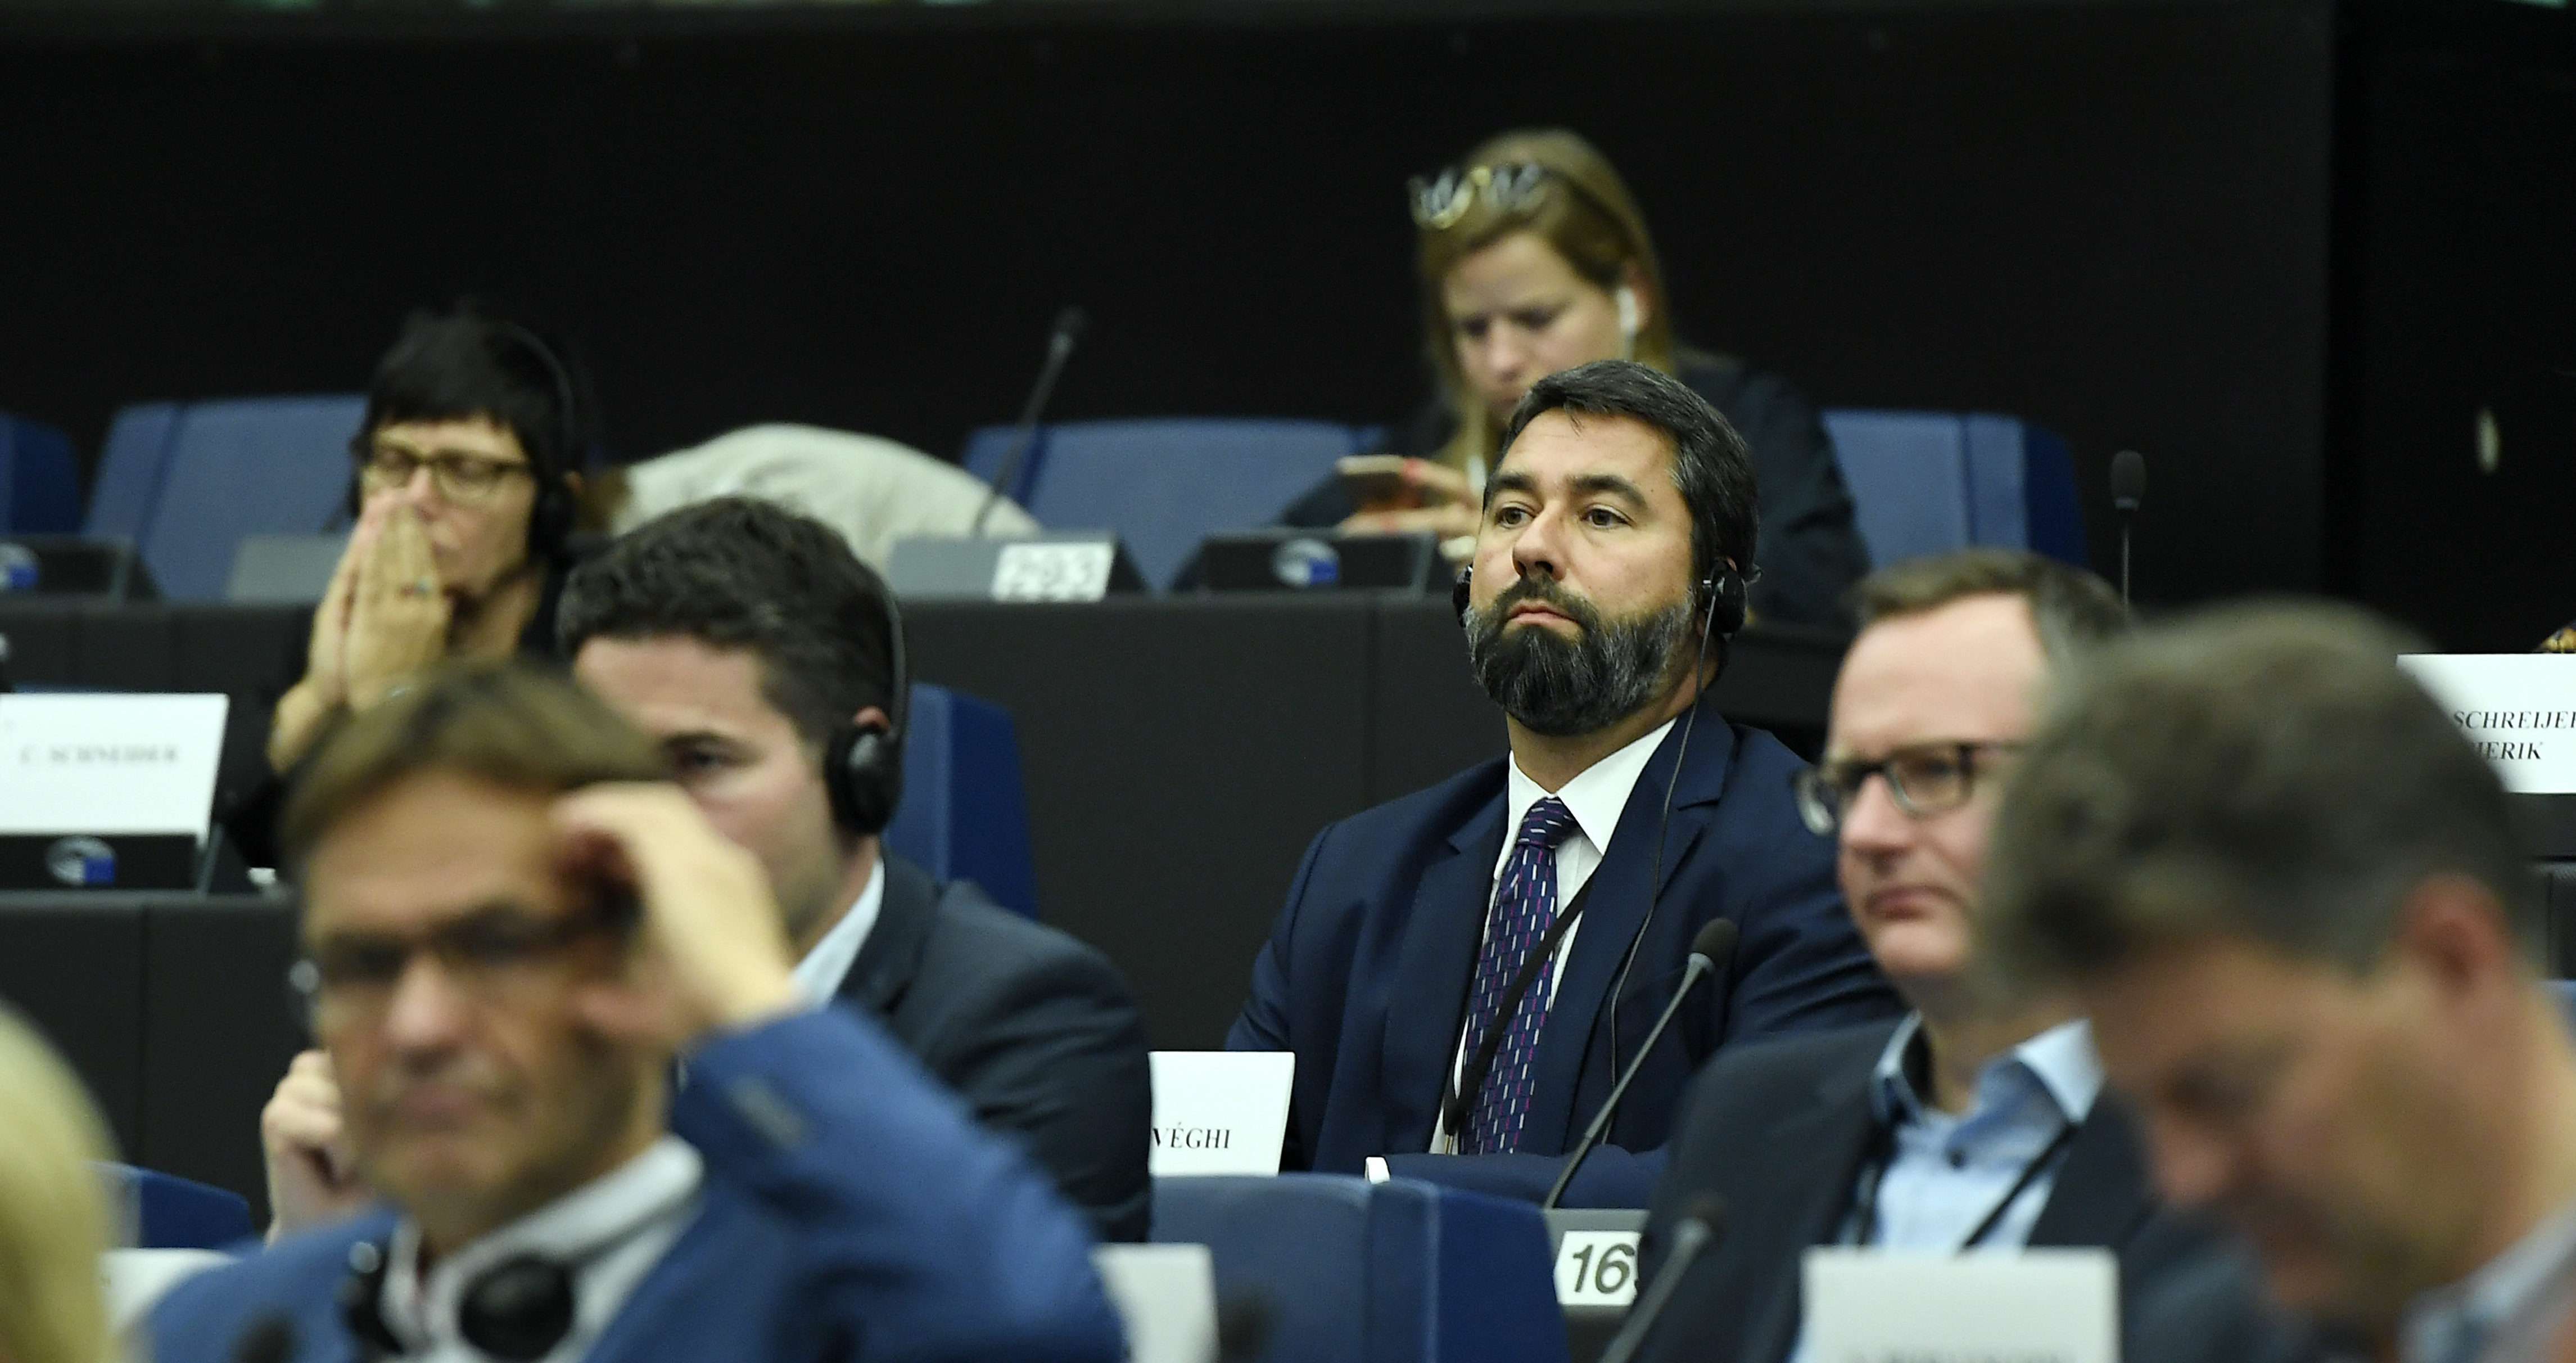 Fideszov zastupnik u Europskom parlamentu Hidvéghi eu brussles